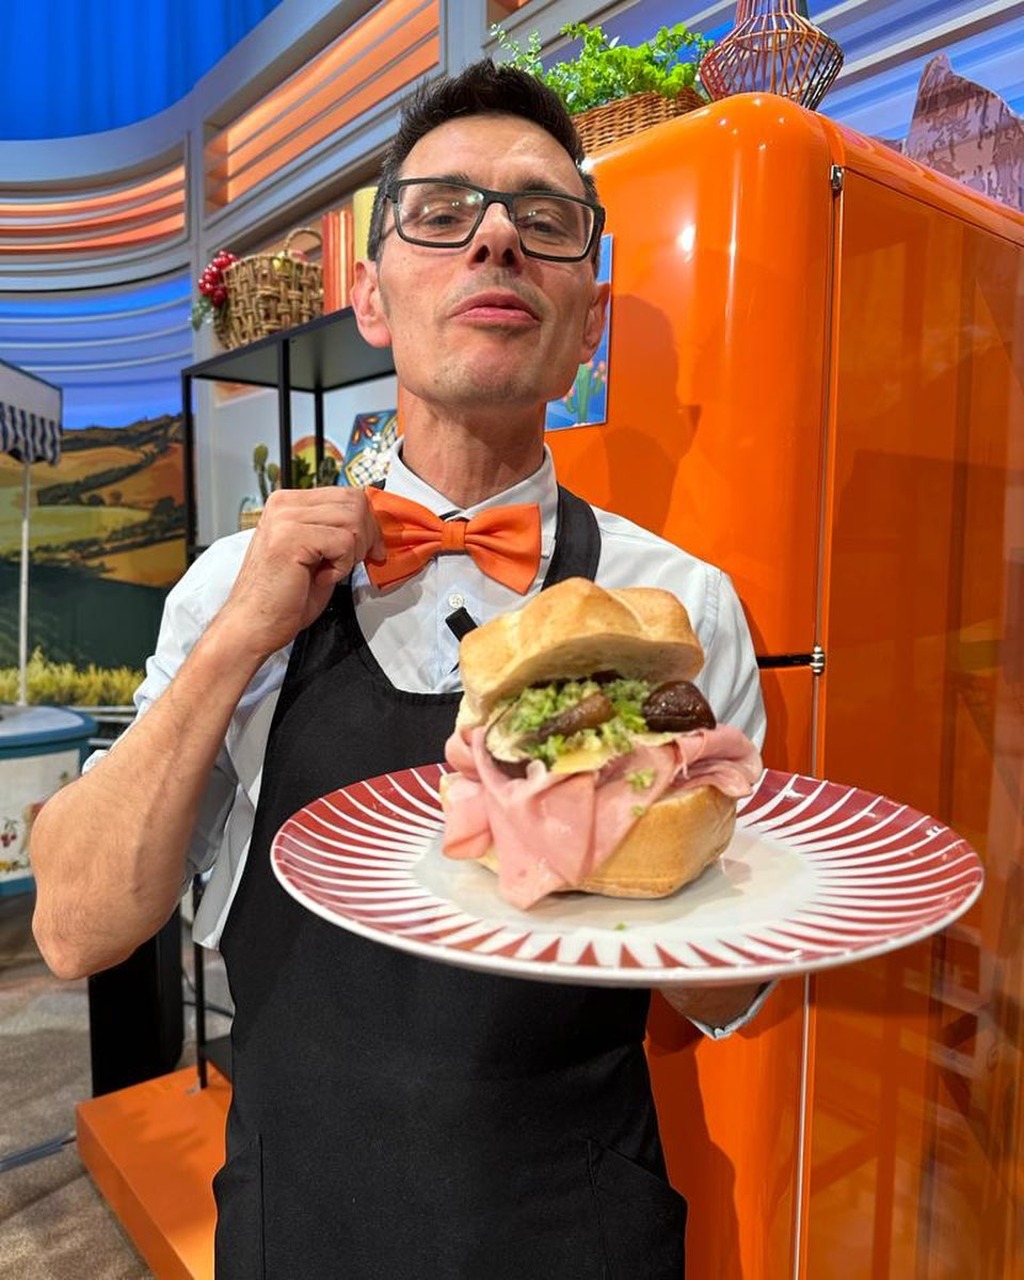 Gourmet sandwich: Daniele Reponi, dens sande opfinder, blev født i Modena den 7. november 1975